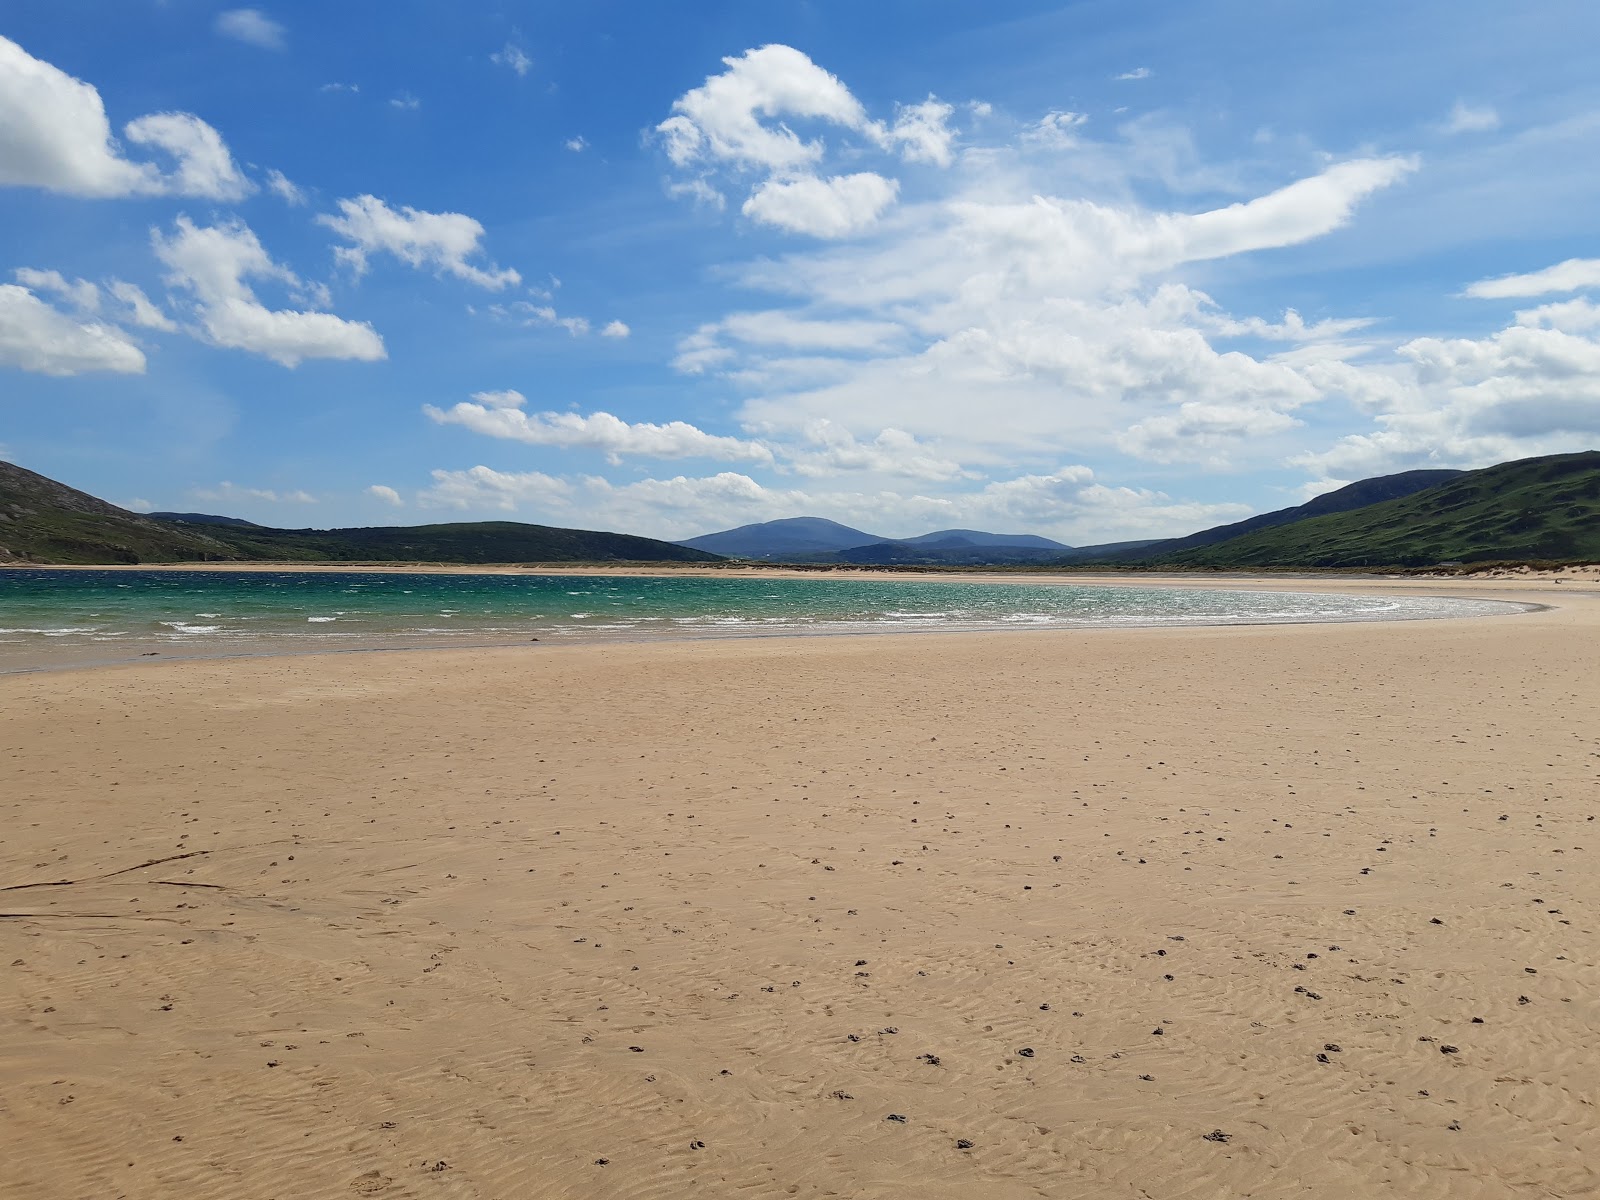 Fotografie cu Tullagh Beach - locul popular printre cunoscătorii de relaxare